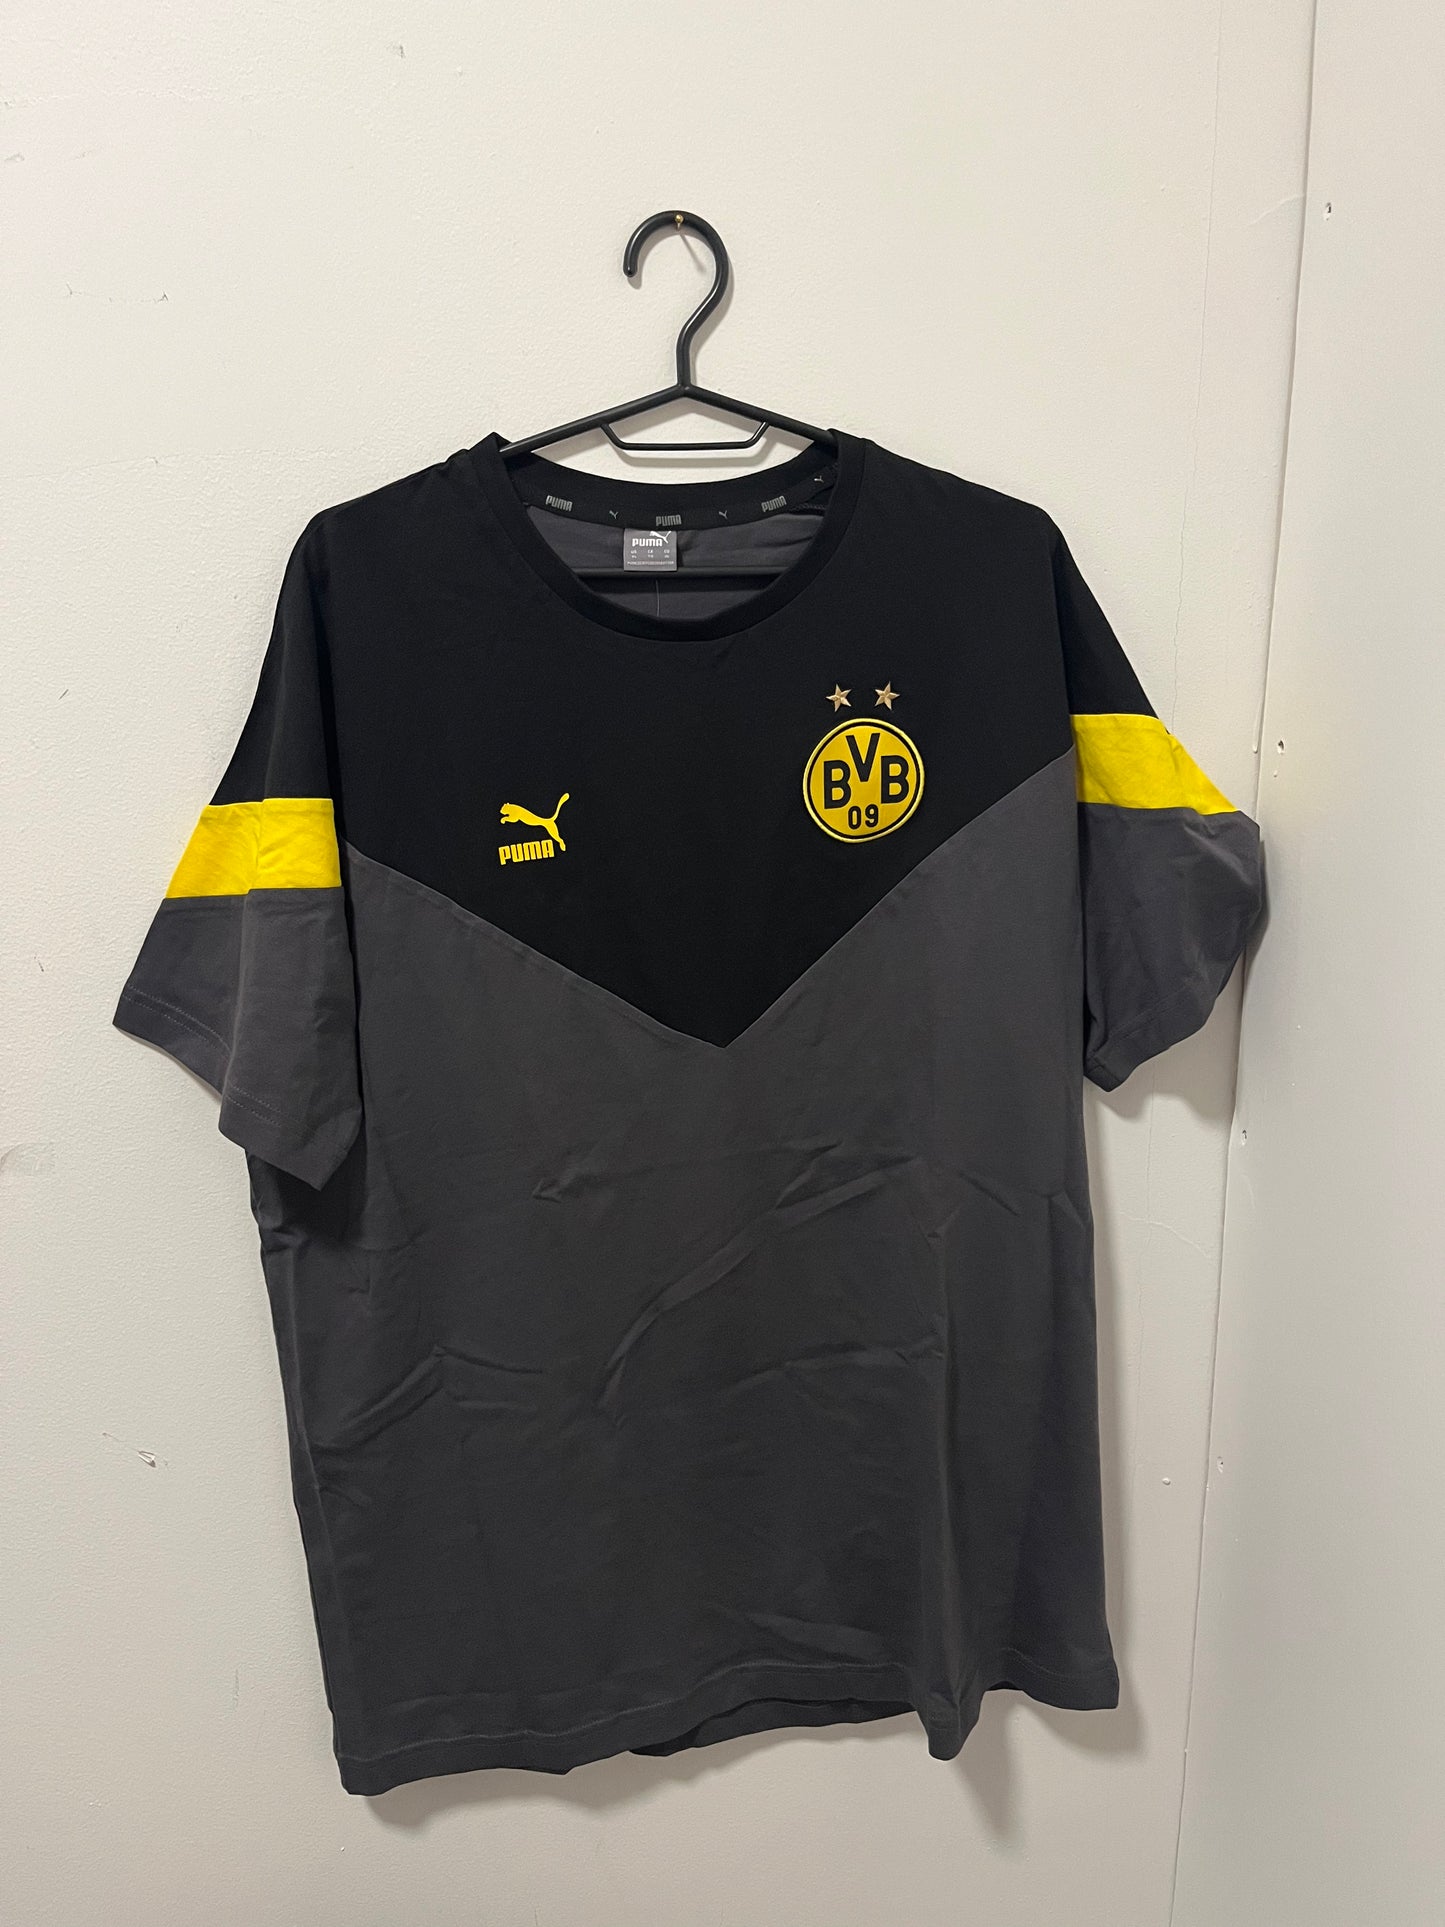 BVB Dortmund T-shirt